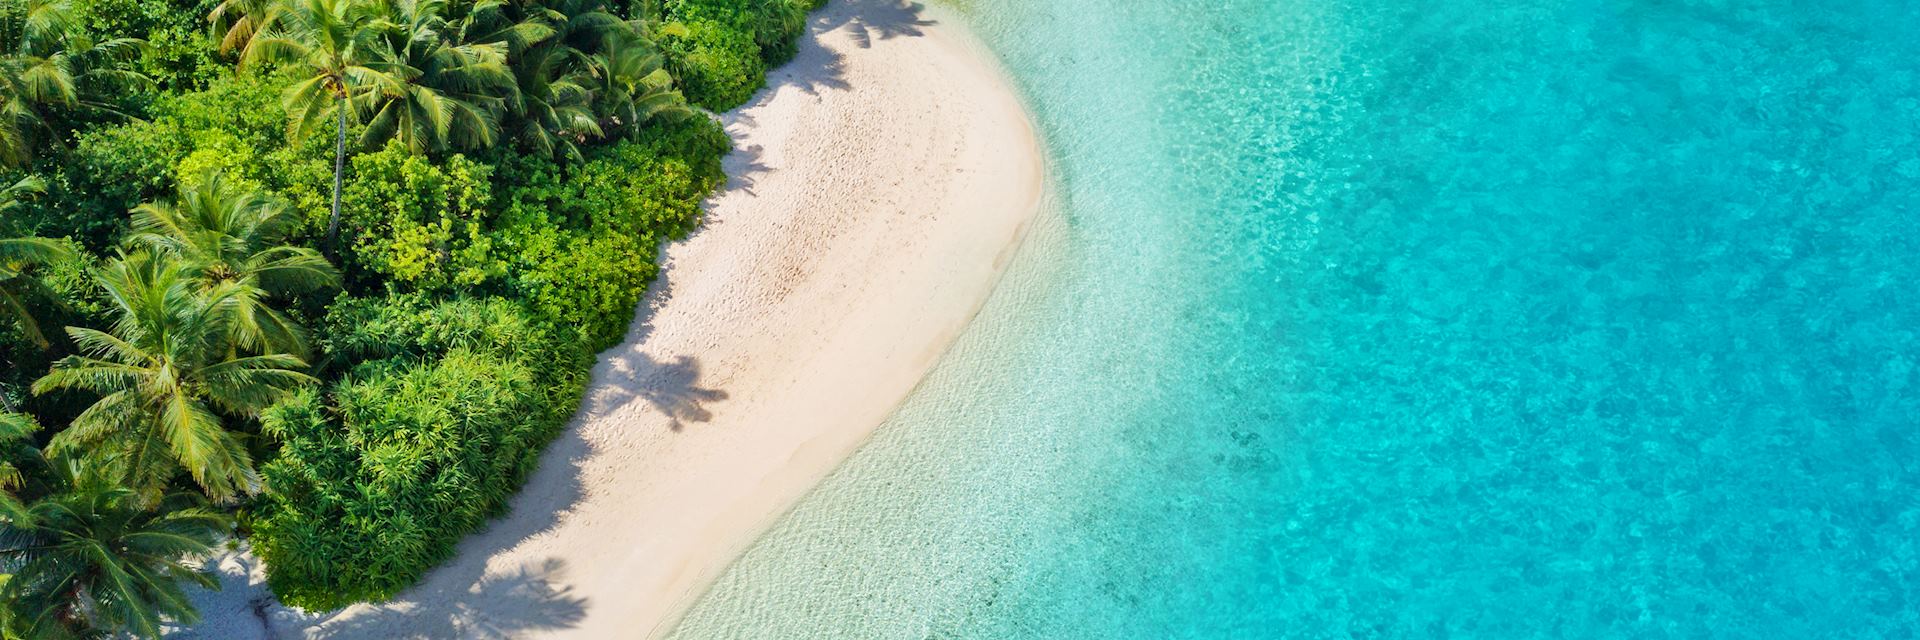 Maldives beach aerial view